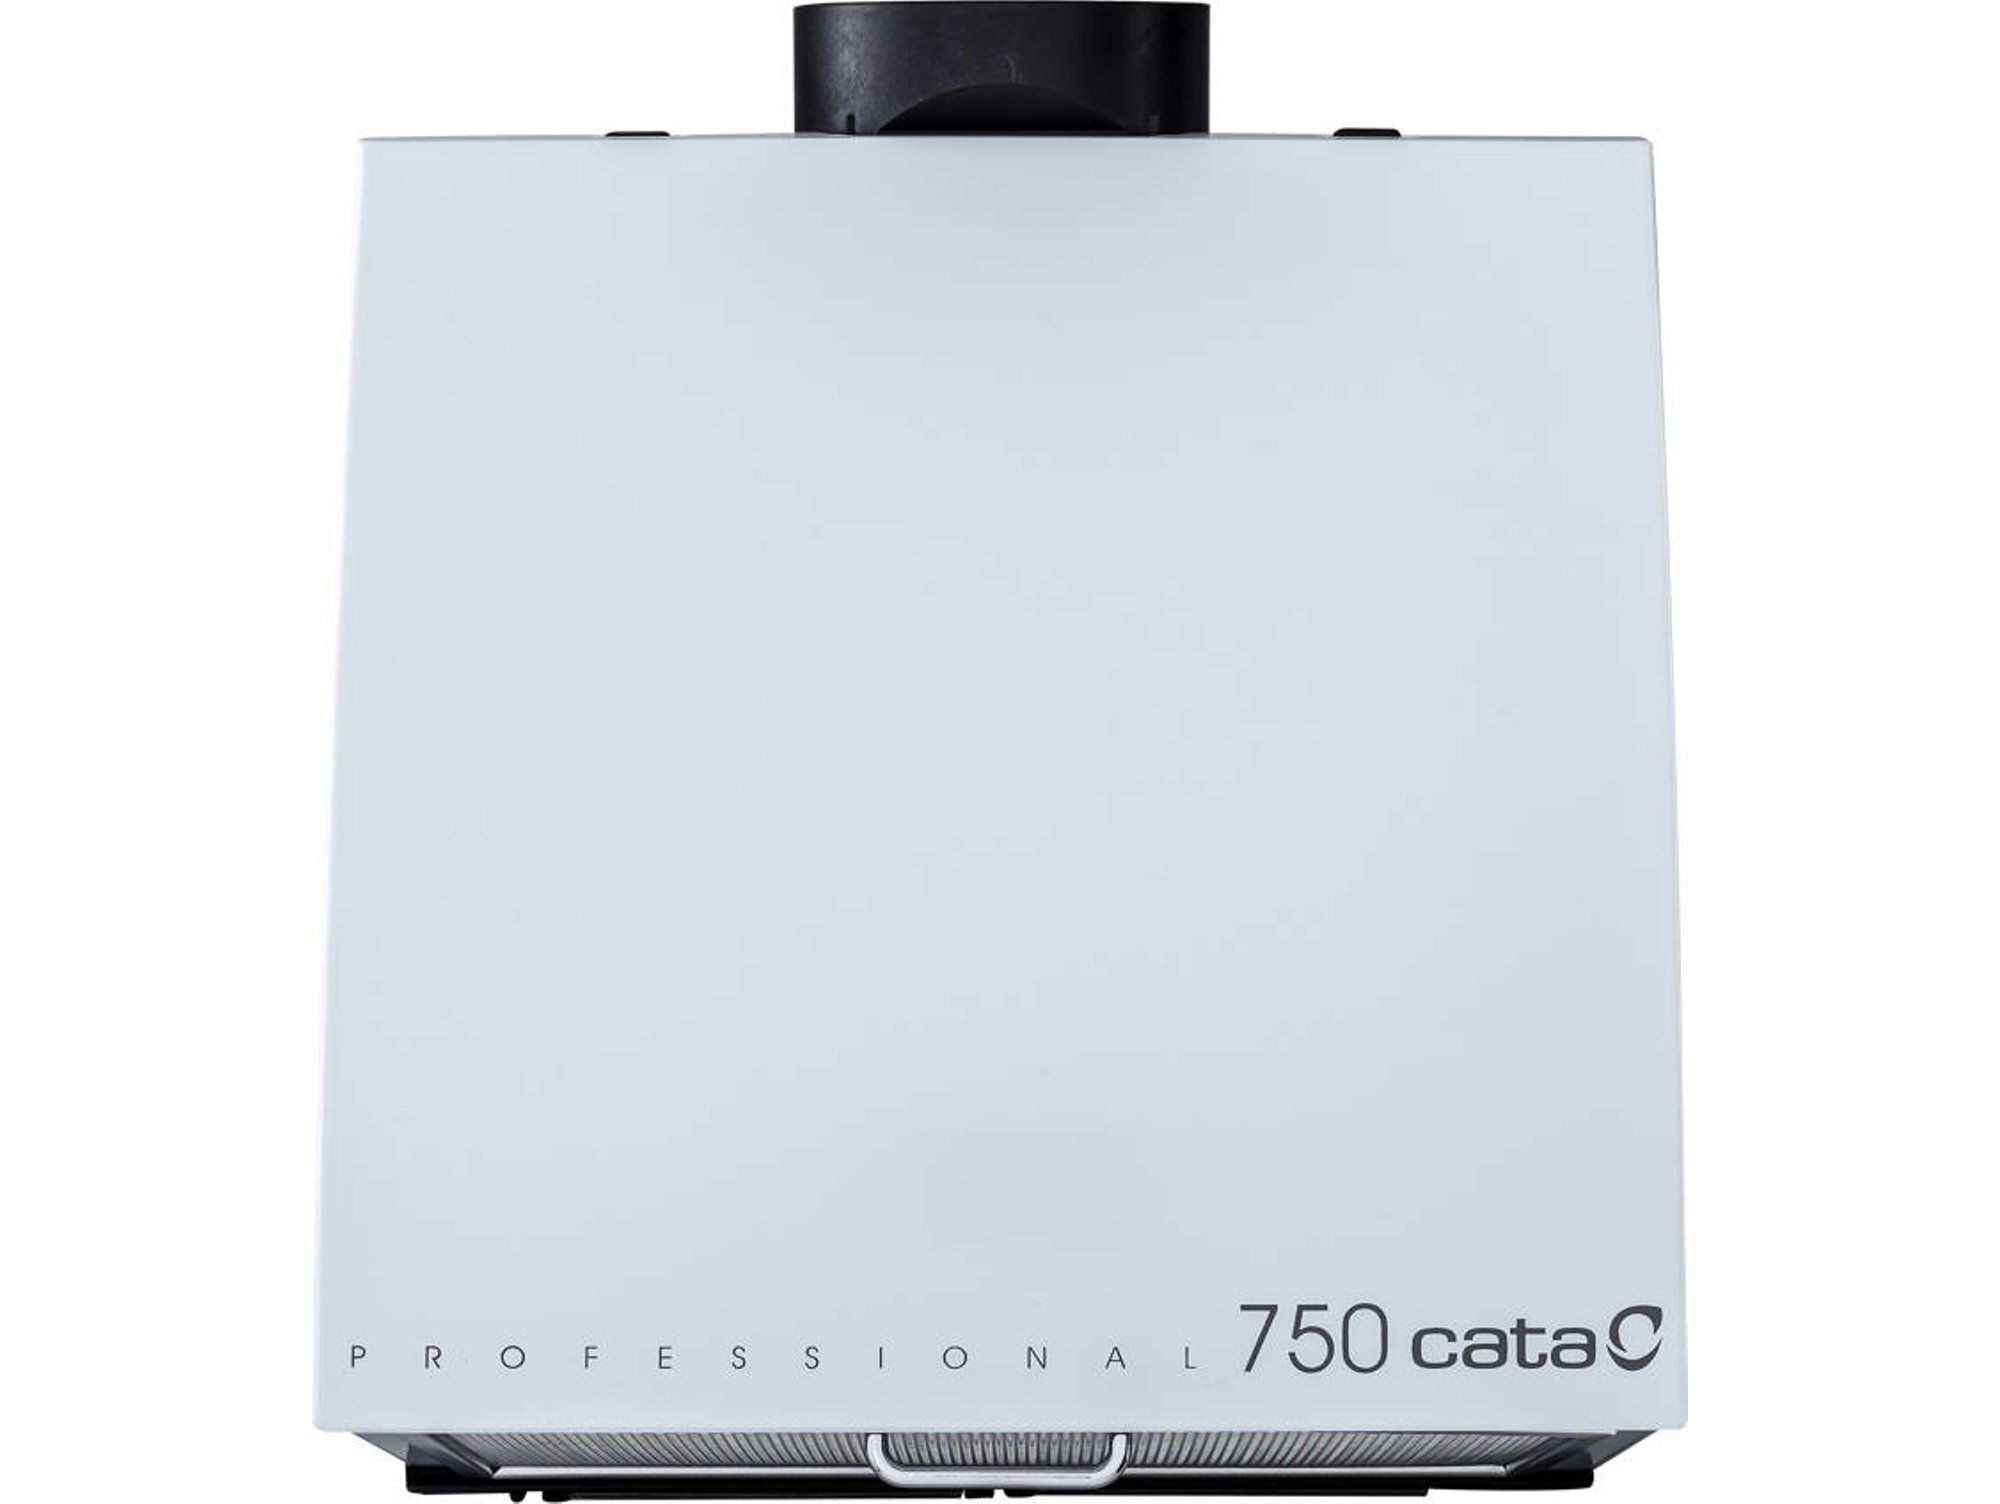 Campana Cata Professional 750 49 db 700 m3h blanco l m45966 extractor de cocina 185w profesional 750l 365 2x28w 700m³h